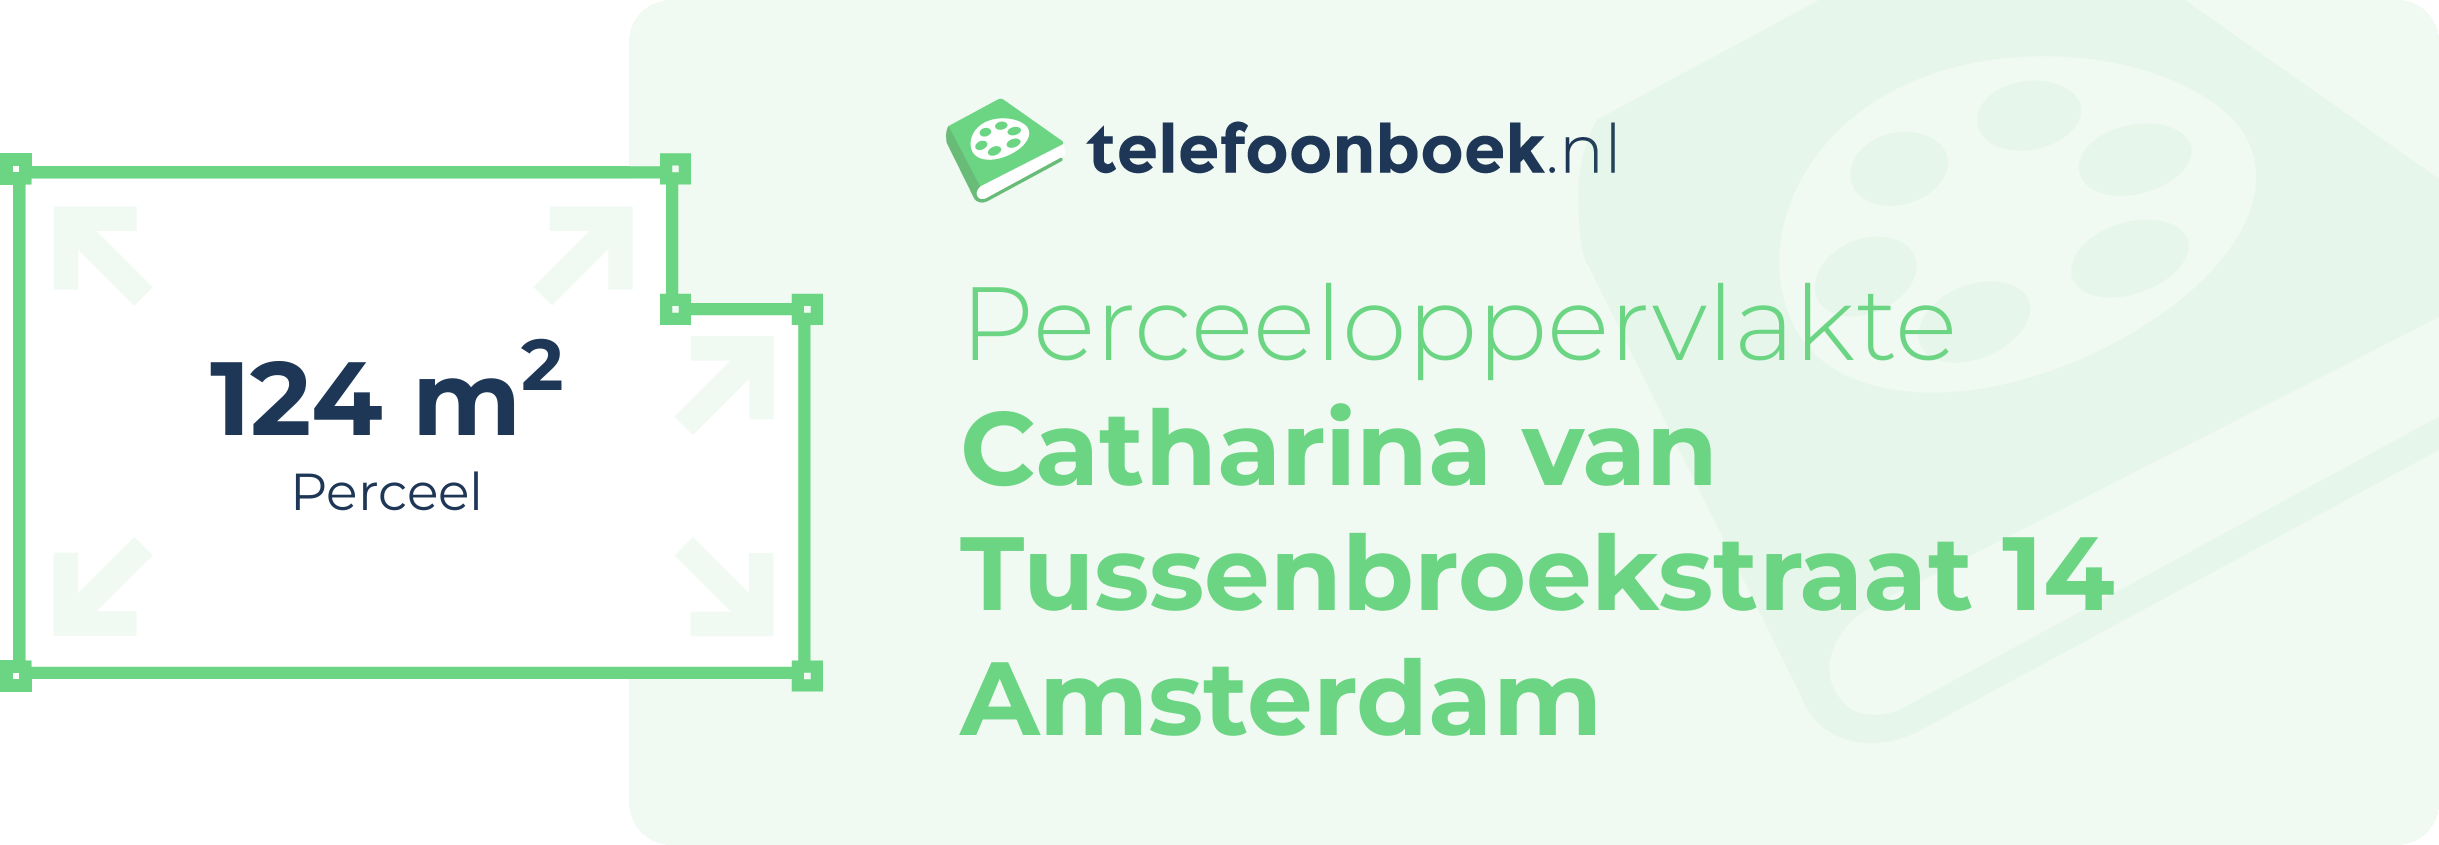 Perceeloppervlakte Catharina Van Tussenbroekstraat 14 Amsterdam